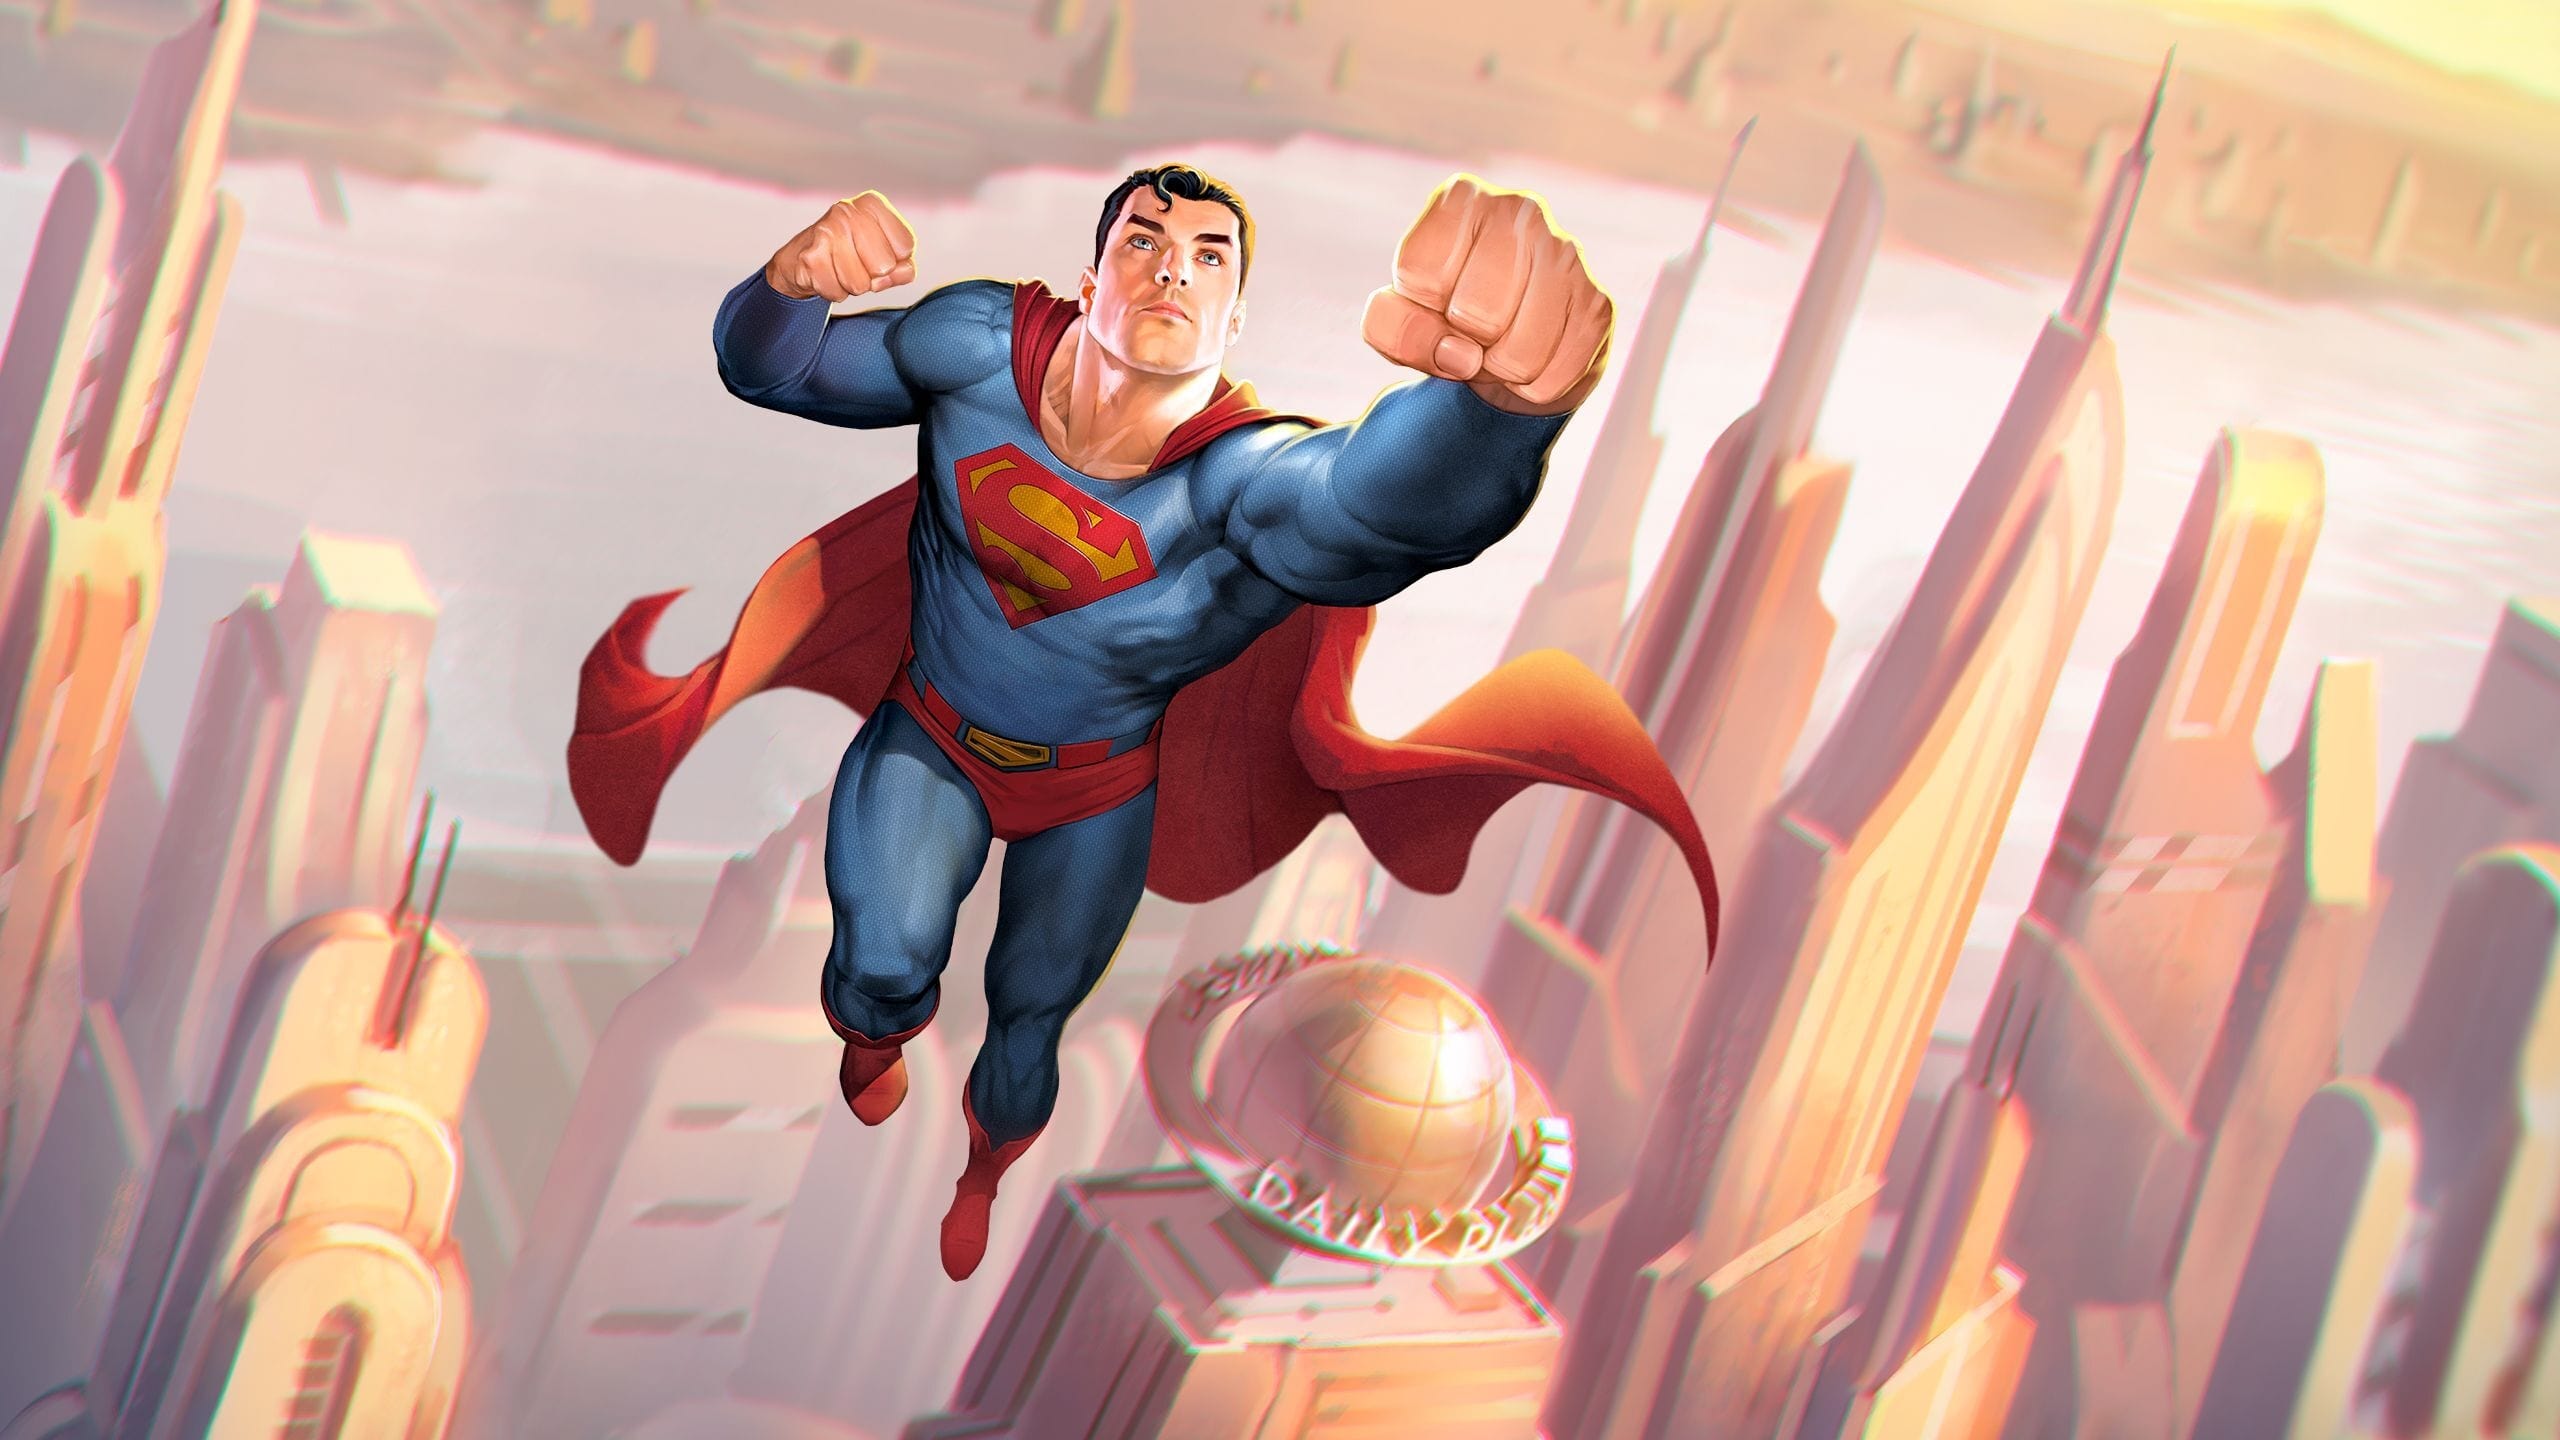 სუპერმენი: მომავლის ადამიანი / SUPERMAN: MAN OF TOMORROW